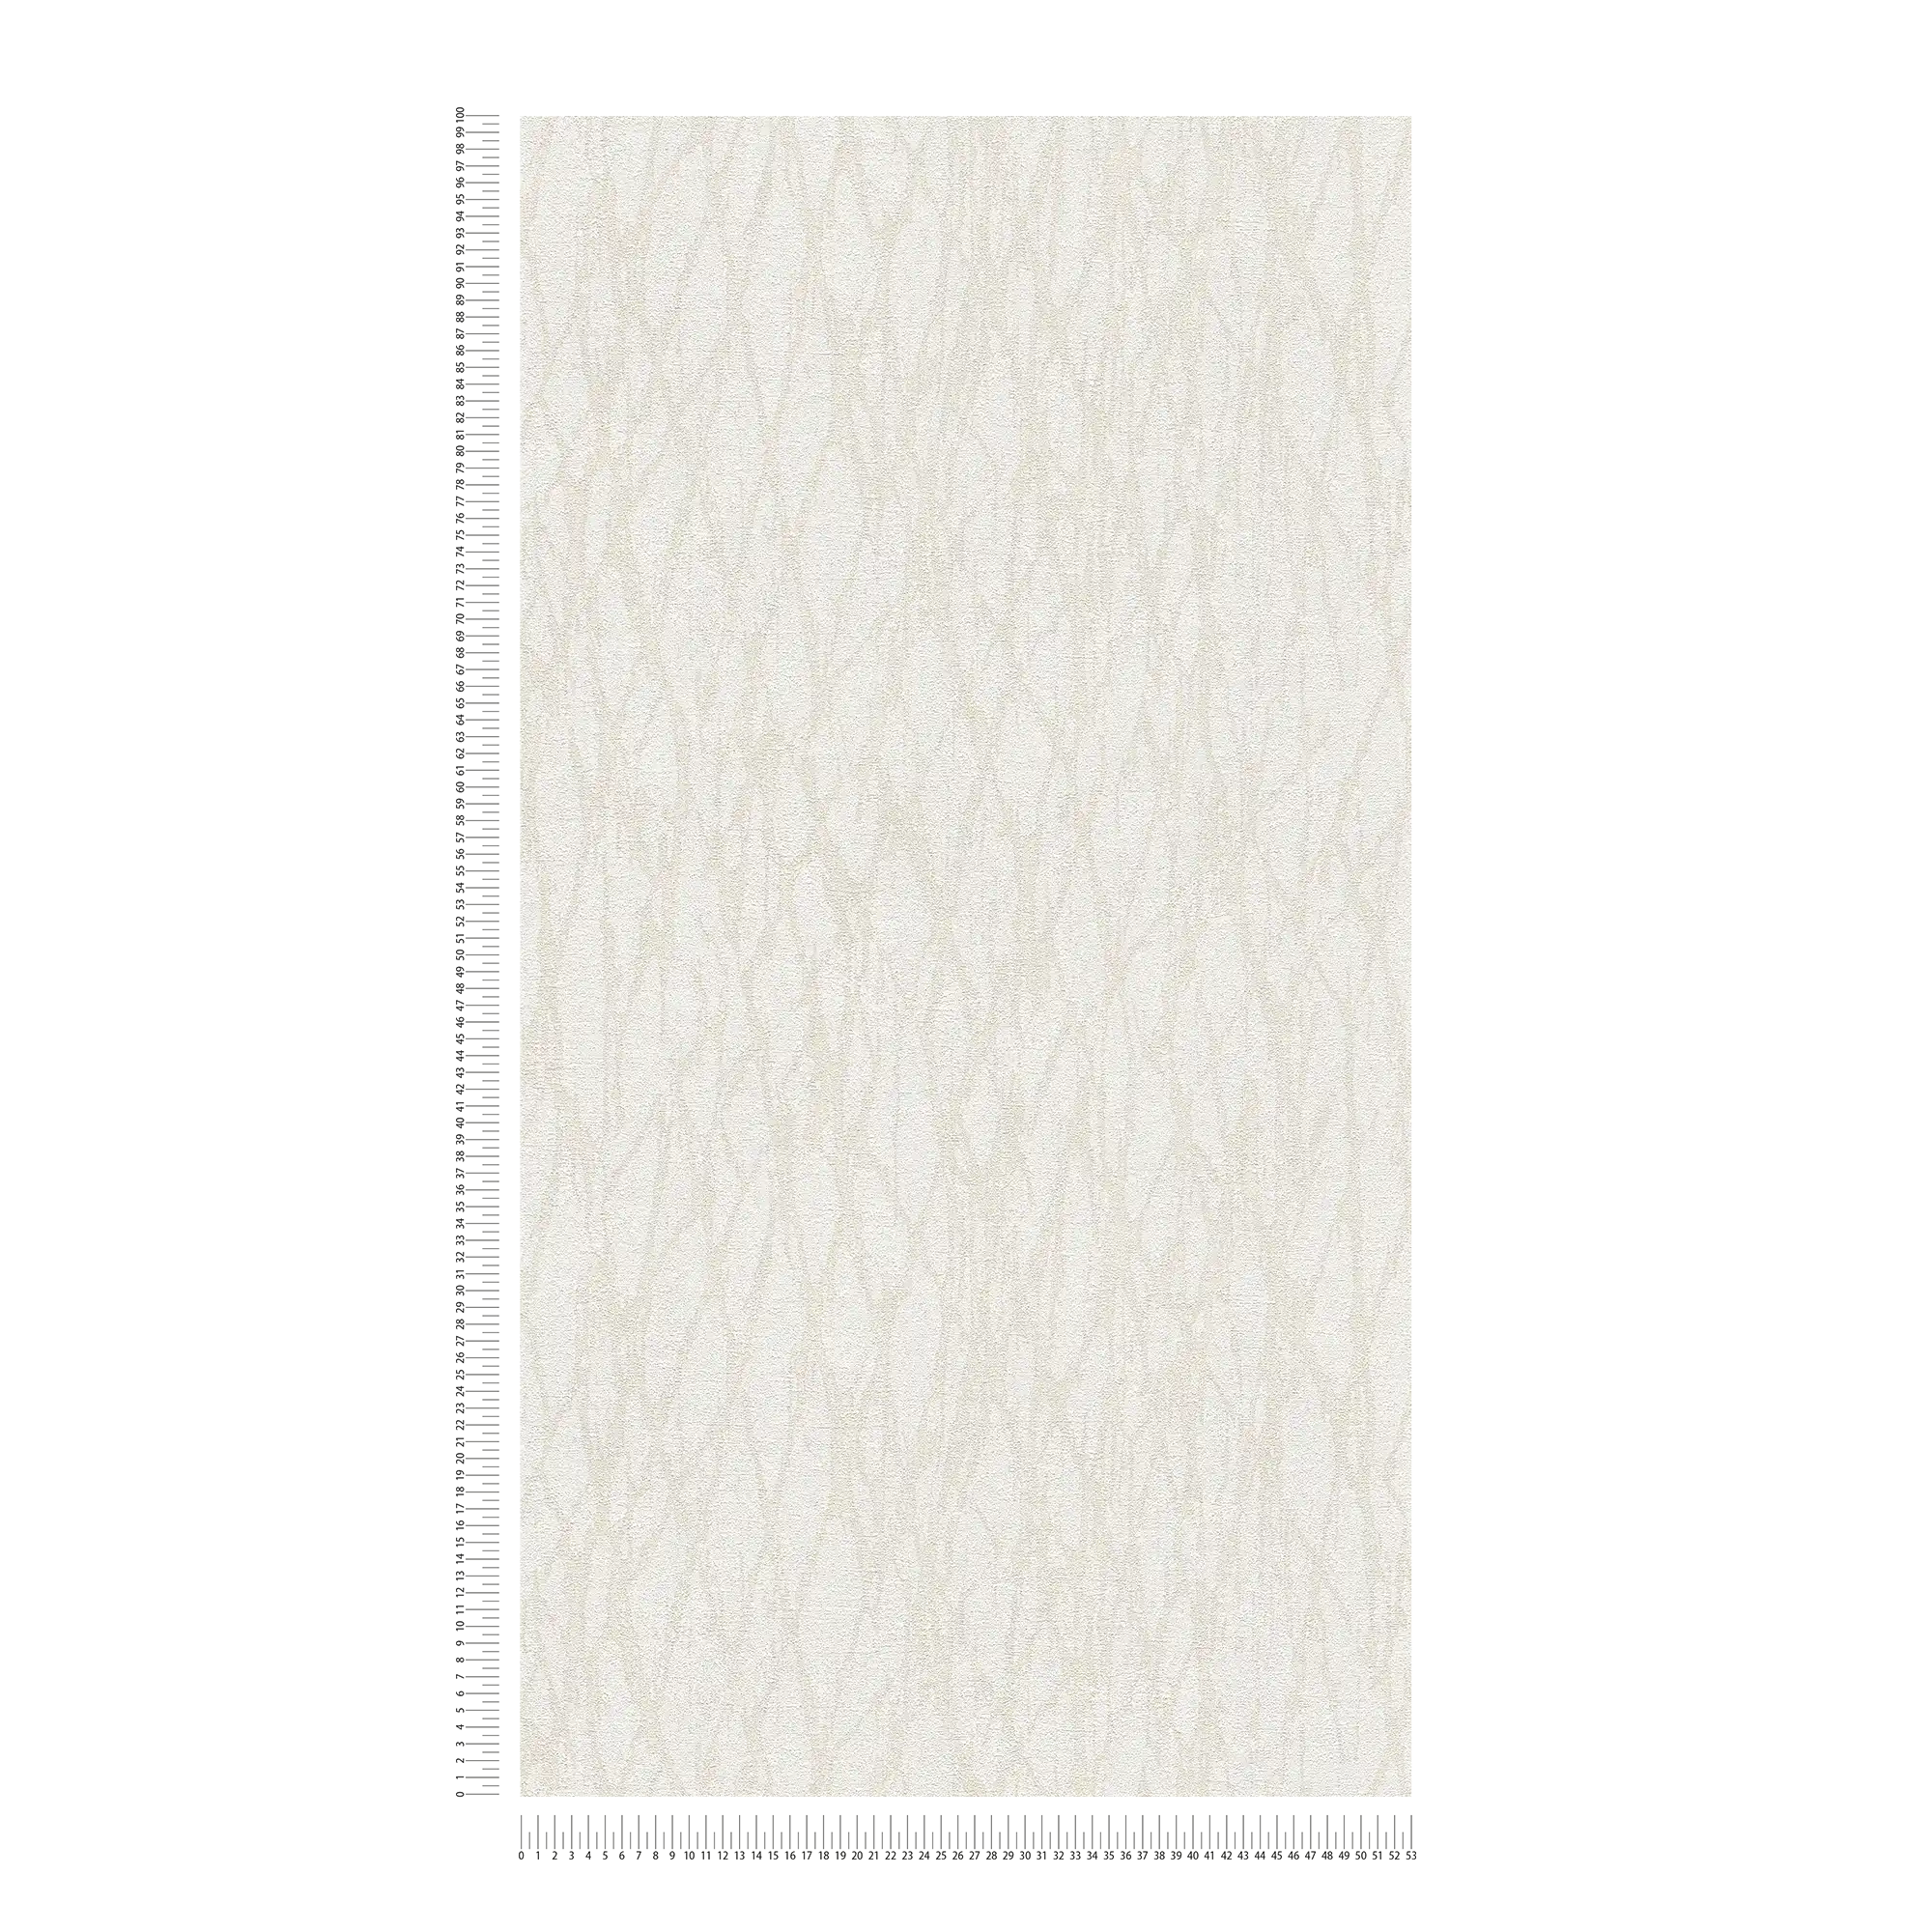             papier peint en papier intissé avec motifs de lignes abstraites - blanc, beige, crème
        